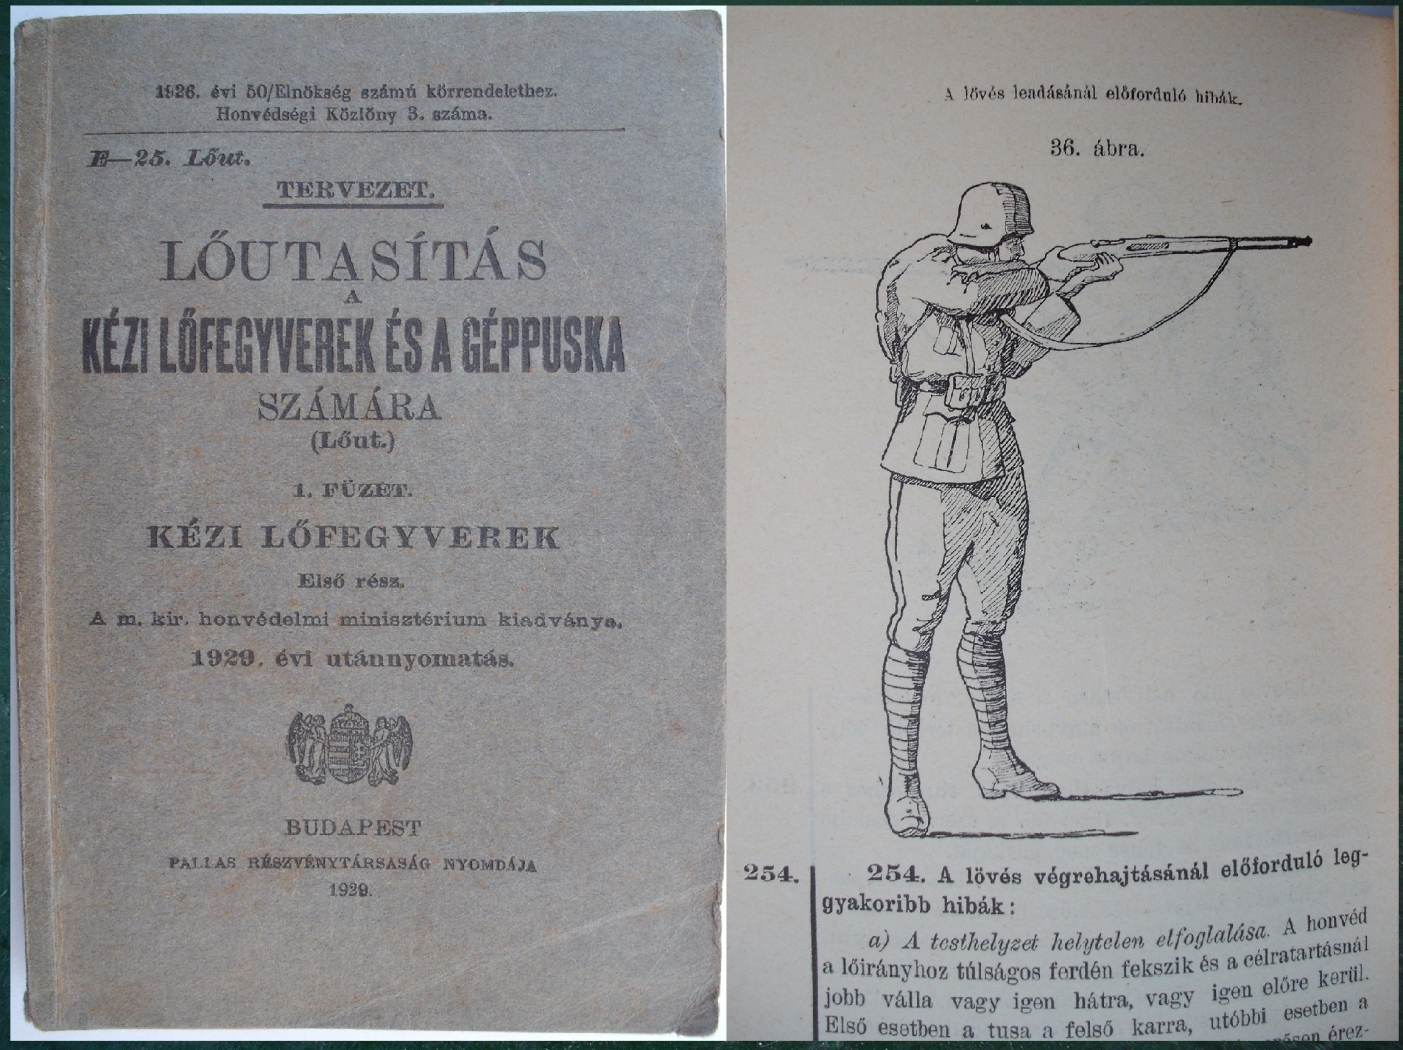 „Lőutasítás a Kézi lőfegyverek és a géppuska számára”  - a M. Kir. Honvédelmi Minisztérium kiadványa 1929-ből